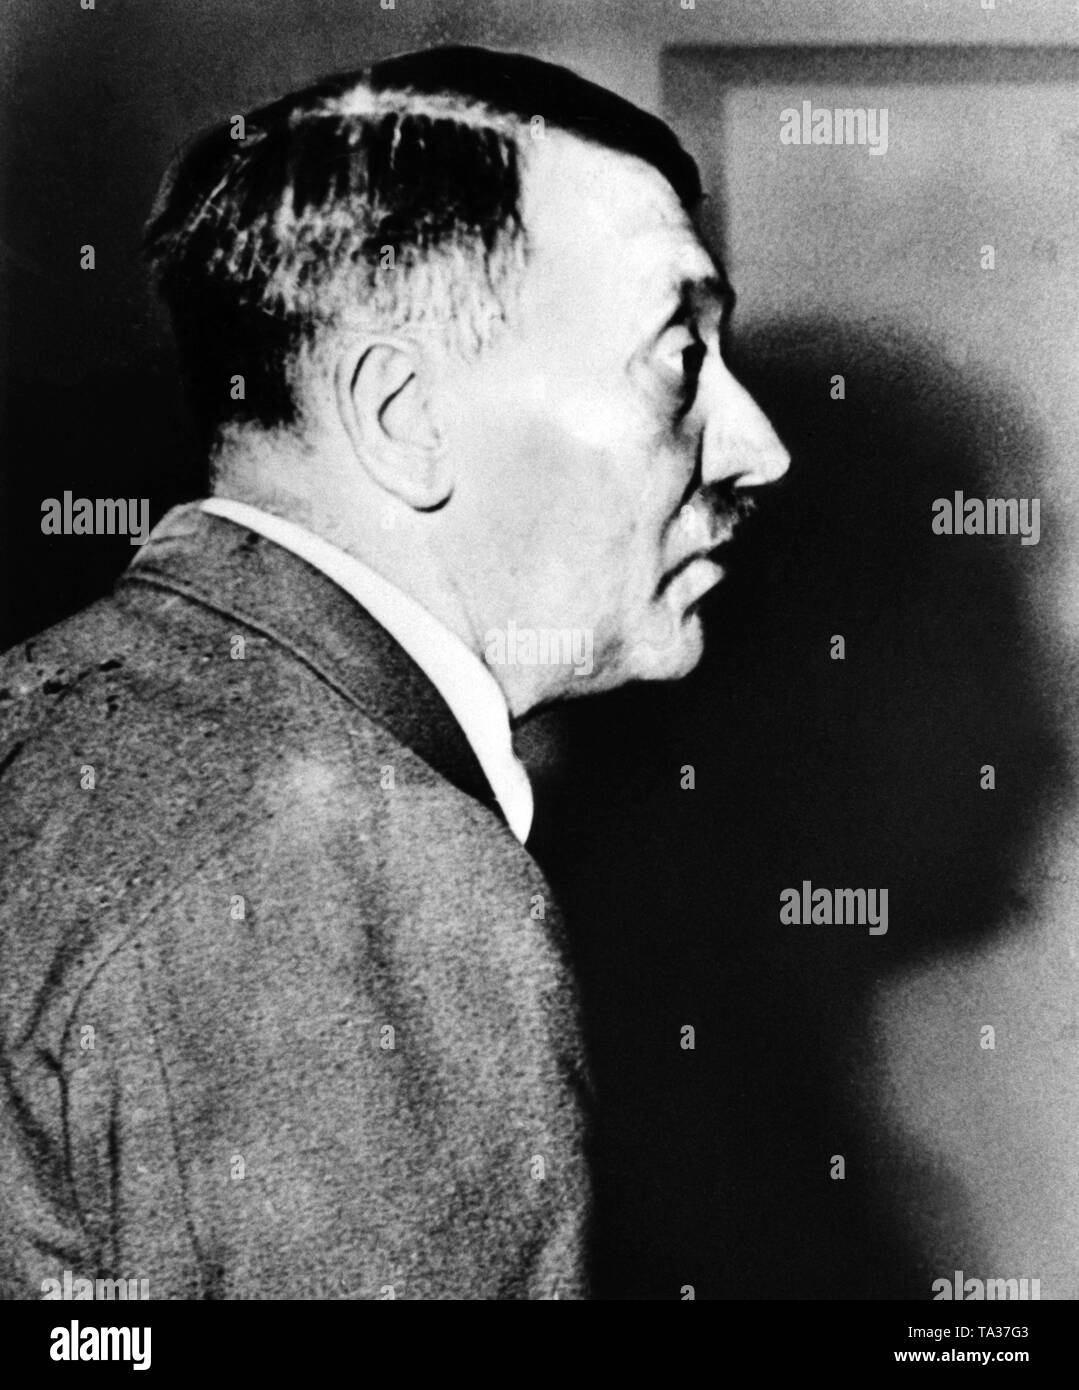 Ritratto di profilo di Adolf Hitler poco dopo il fallito tentativo di assassinio del 20 luglio 1944, quando egli descrive il suo visitatore Mussolini i dettagli dell'esplosione Foto Stock